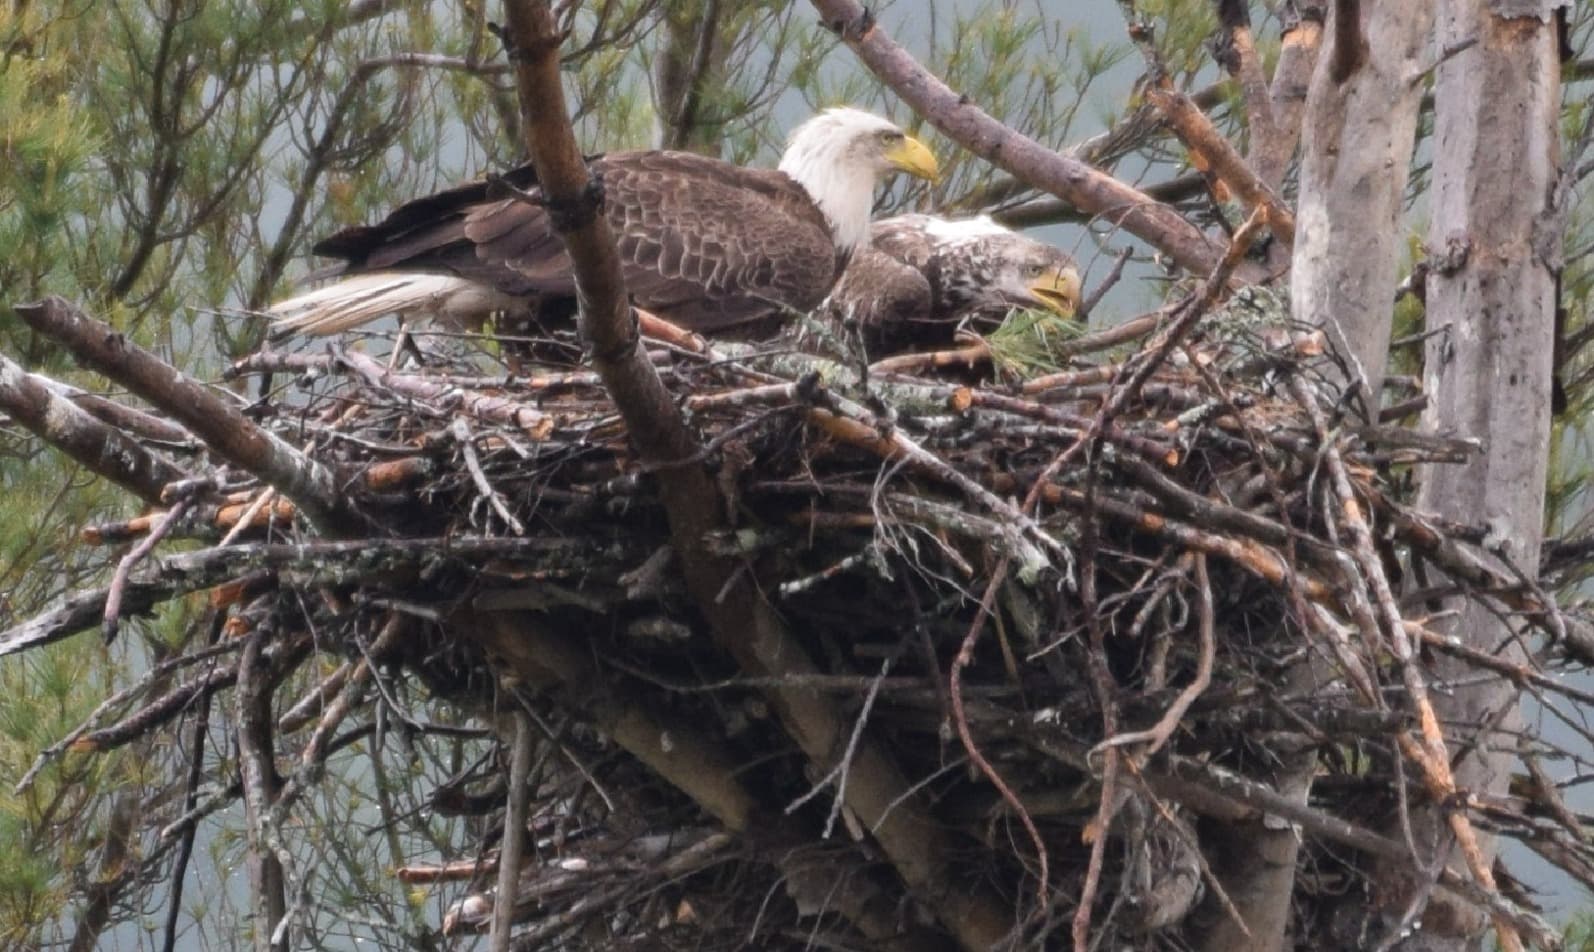 37.	Eagle Nest from Adirondack Wildlife Refuge